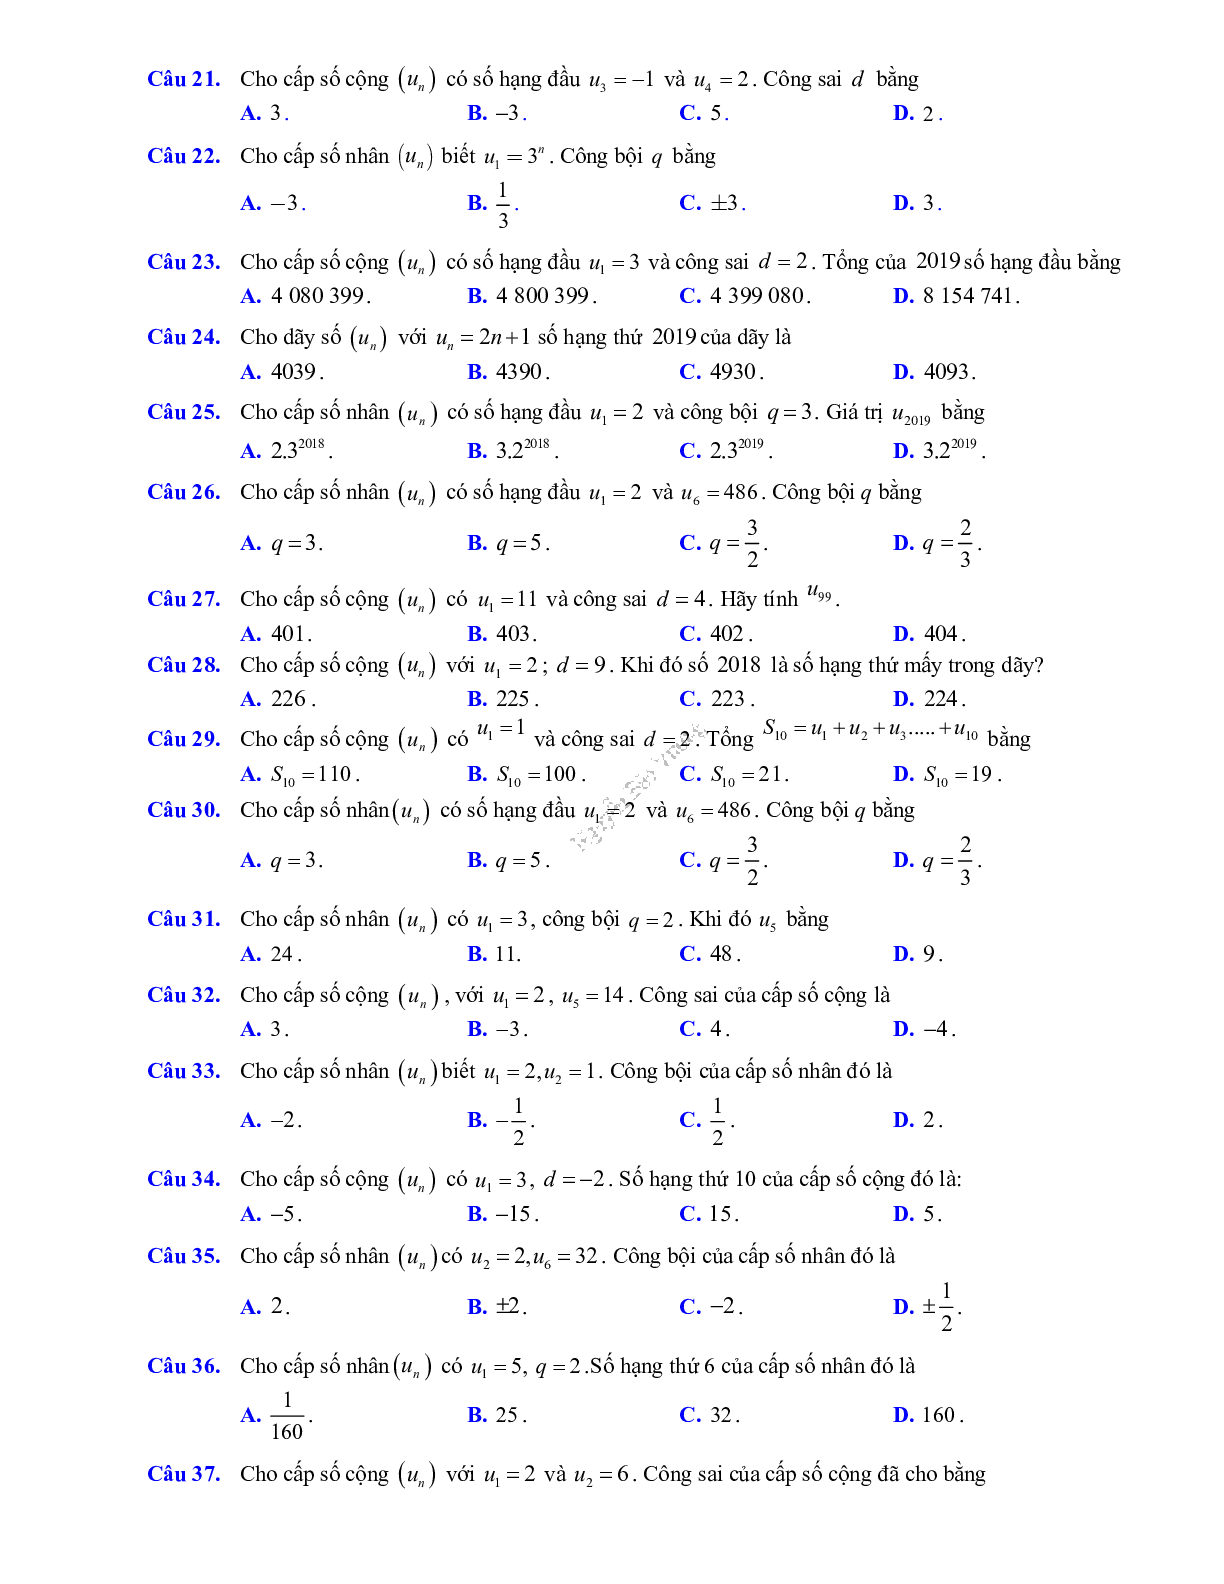 Phương pháp giải về Phép đếm, cấp số cộng và cấp số nhân 2023 (lý thuyết và bài tập) (trang 5)